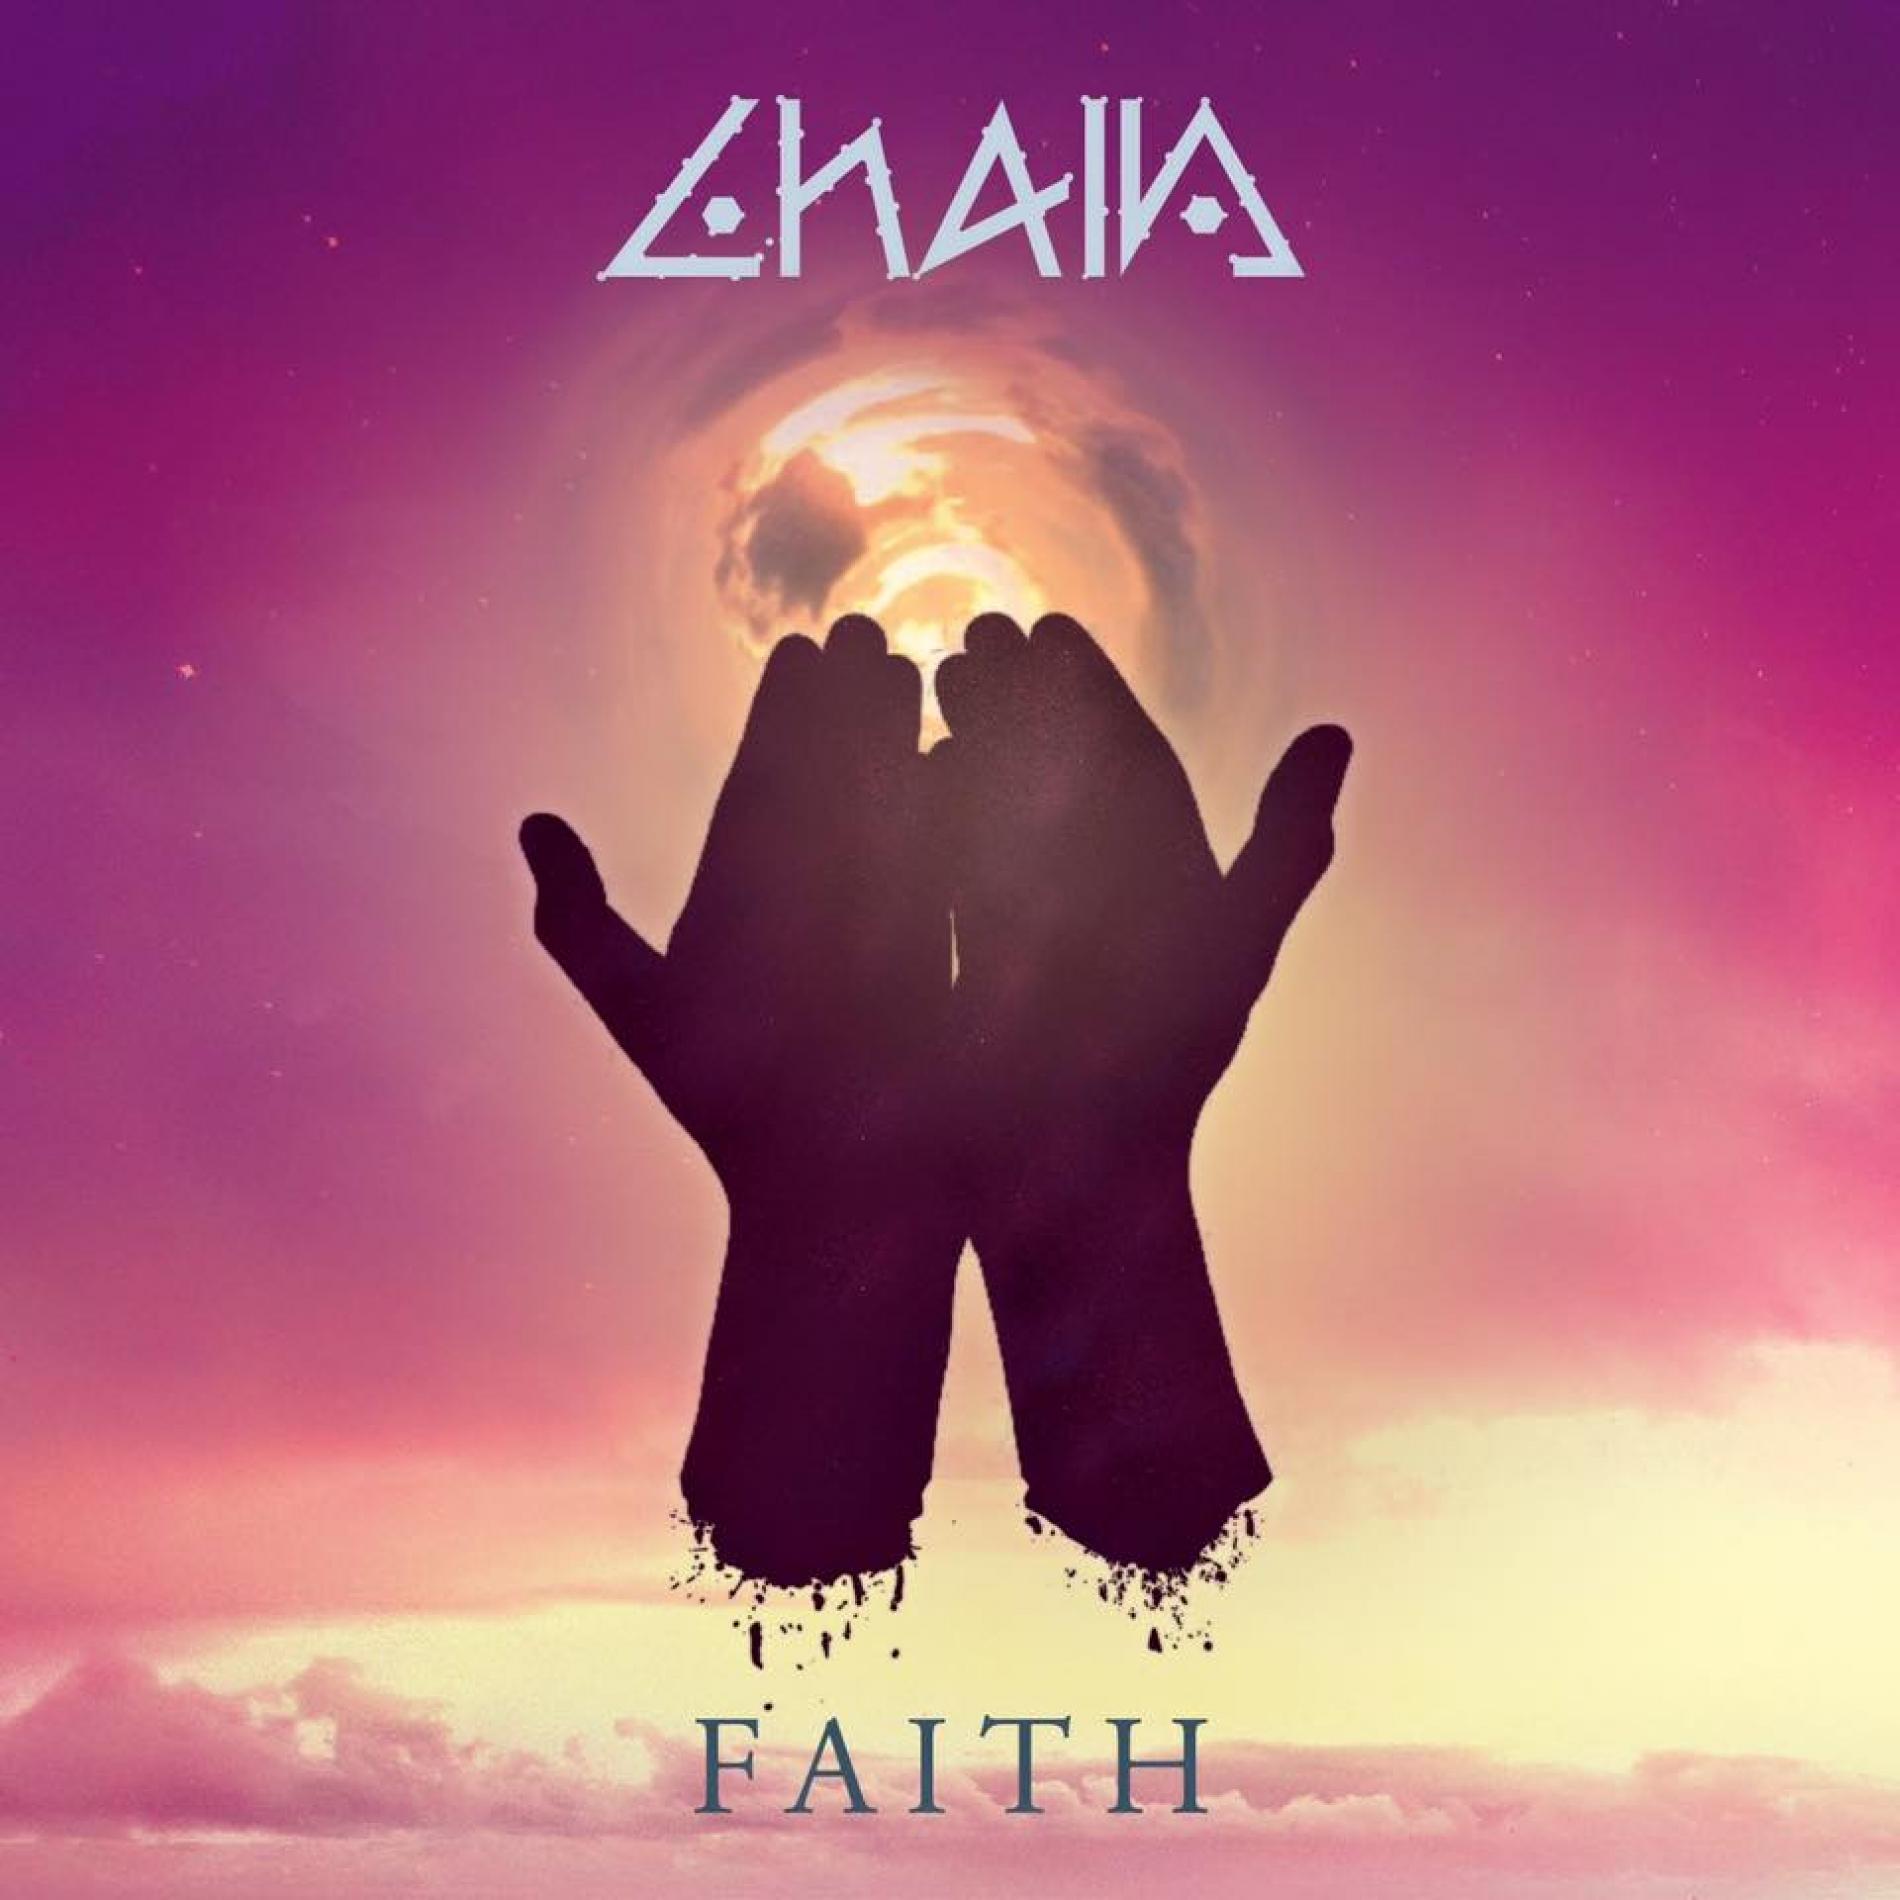 CHAIN – Faith (EP Review)